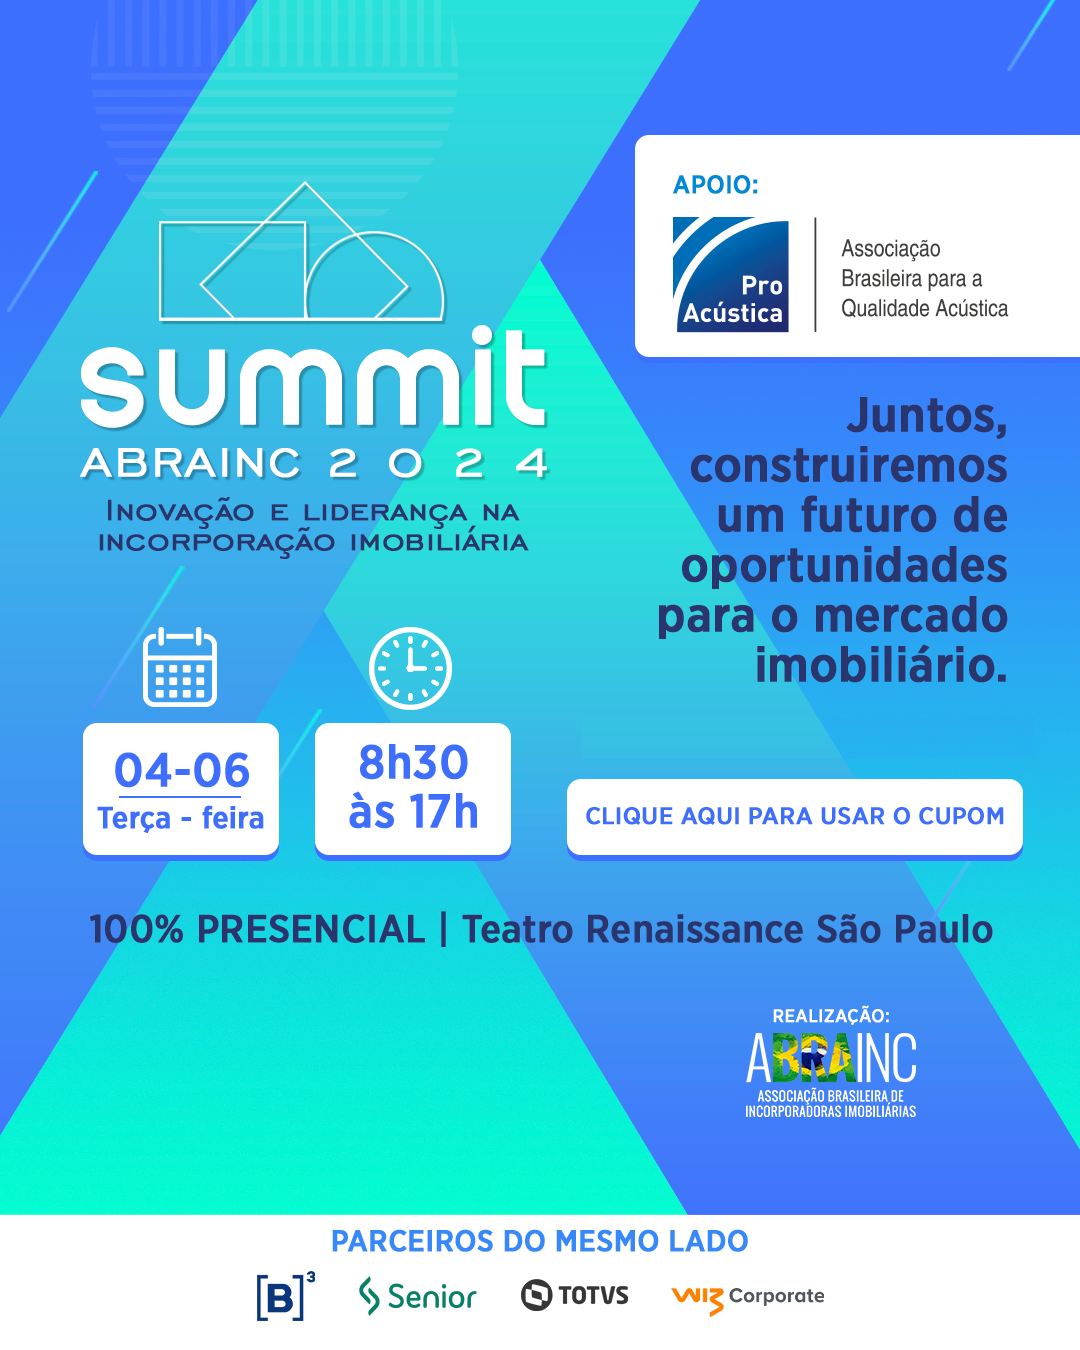 Summit Abrainc 2024: Inovação e liderança na Incorporação Imobiliária